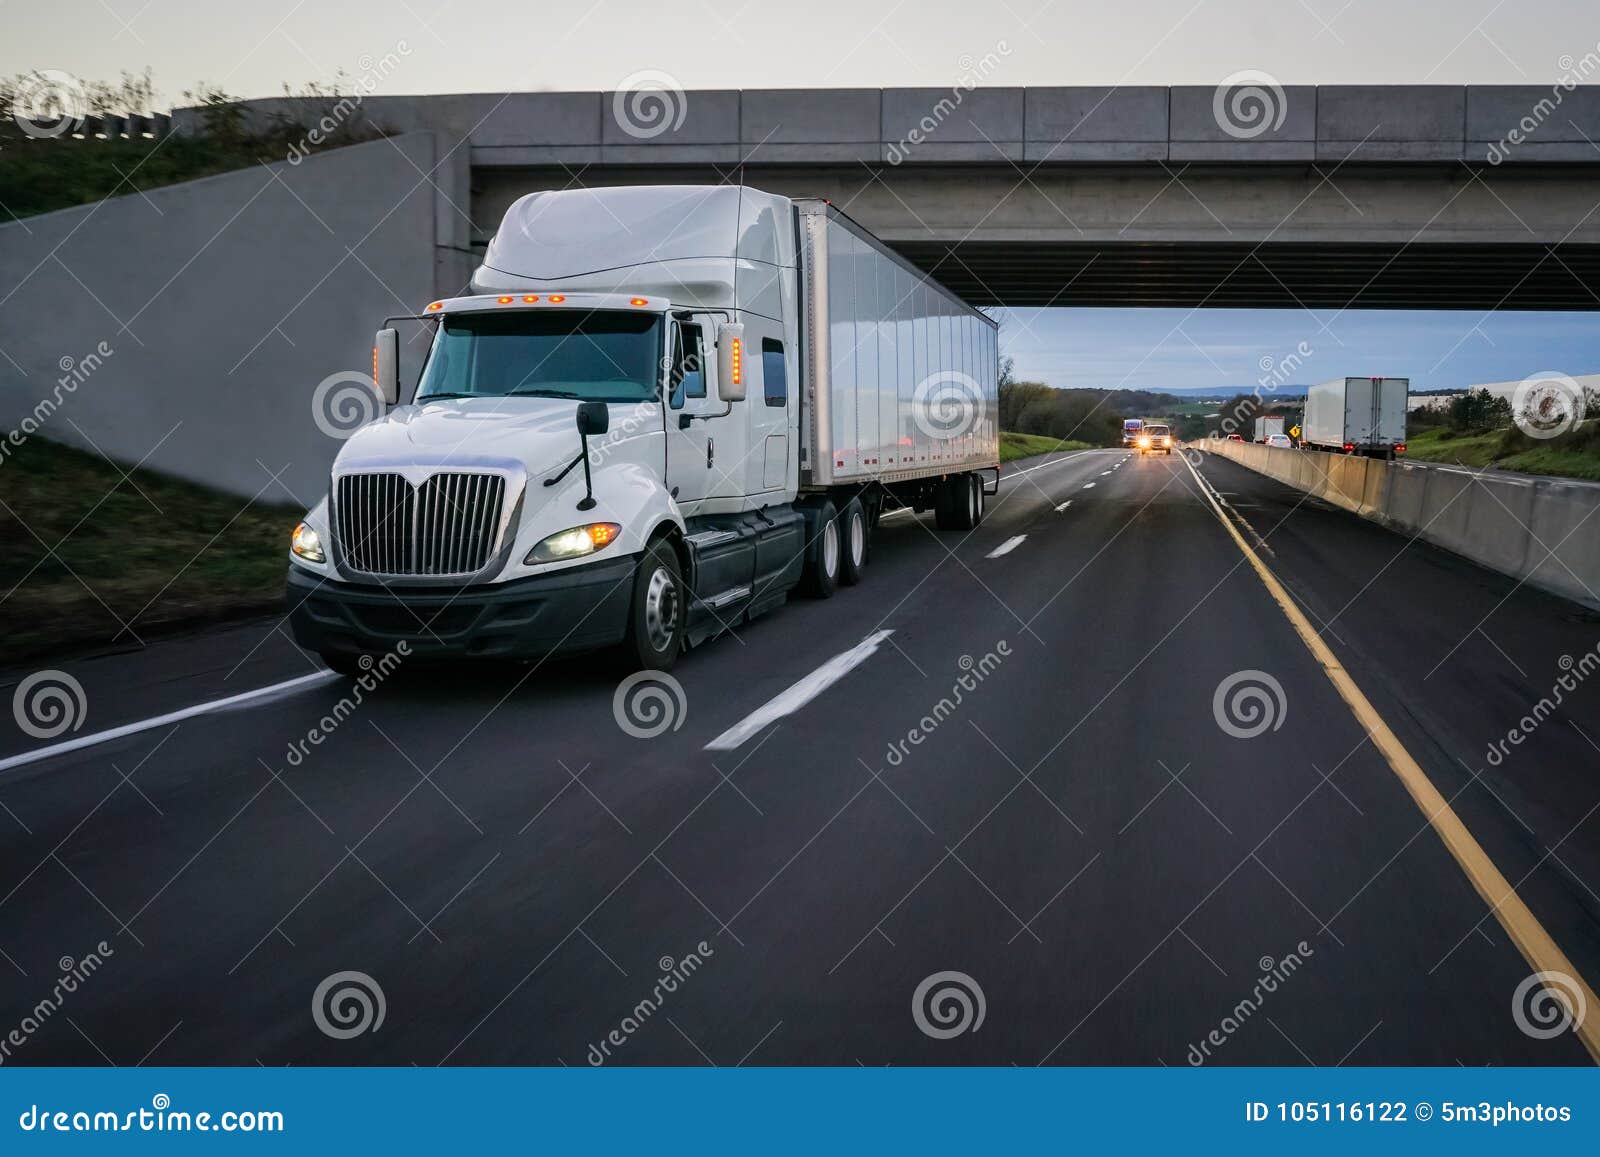 white 18 wheeler semi truck and overpass